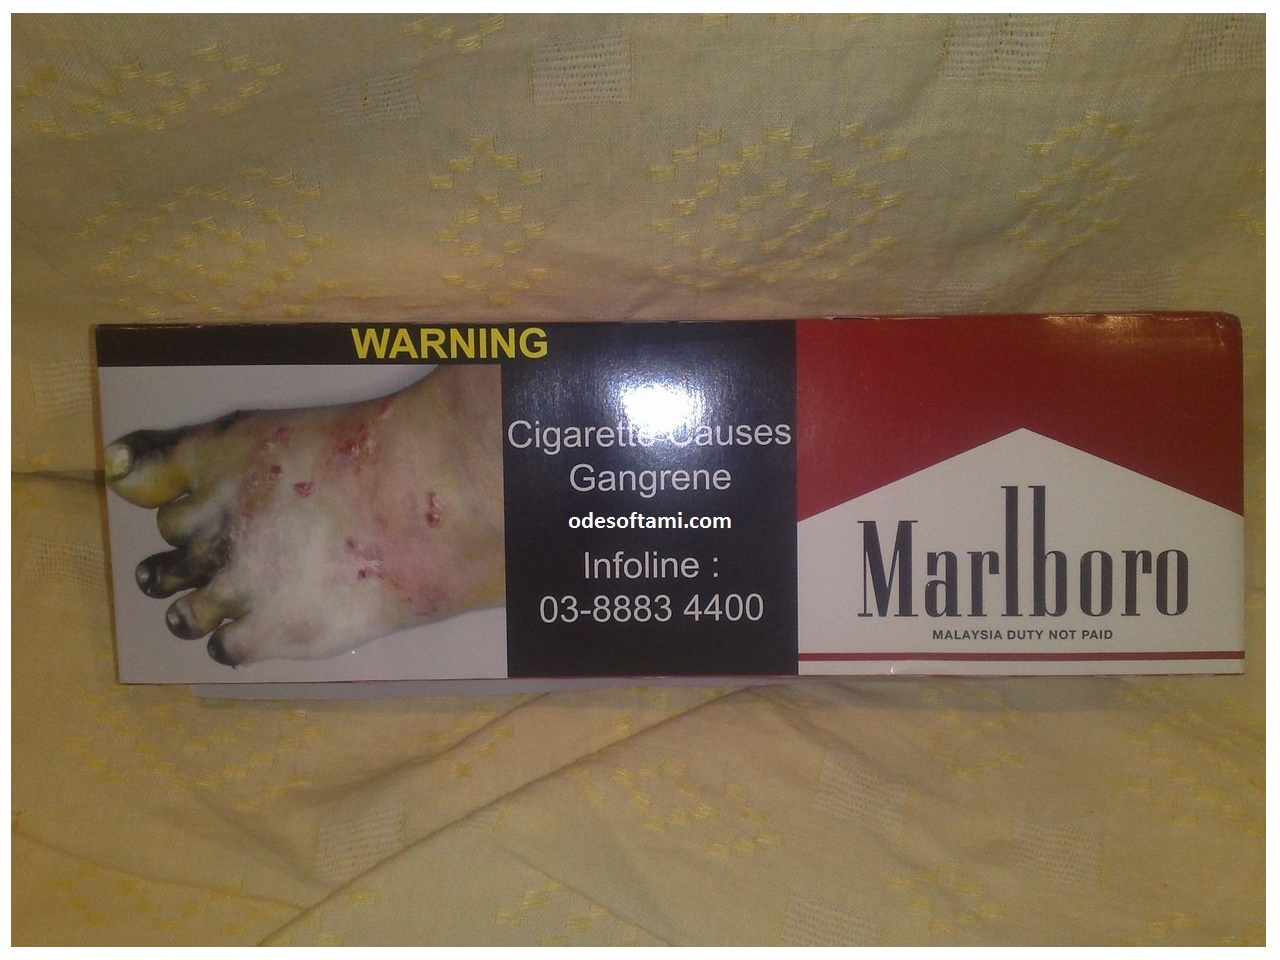 останови рак - бросай курить